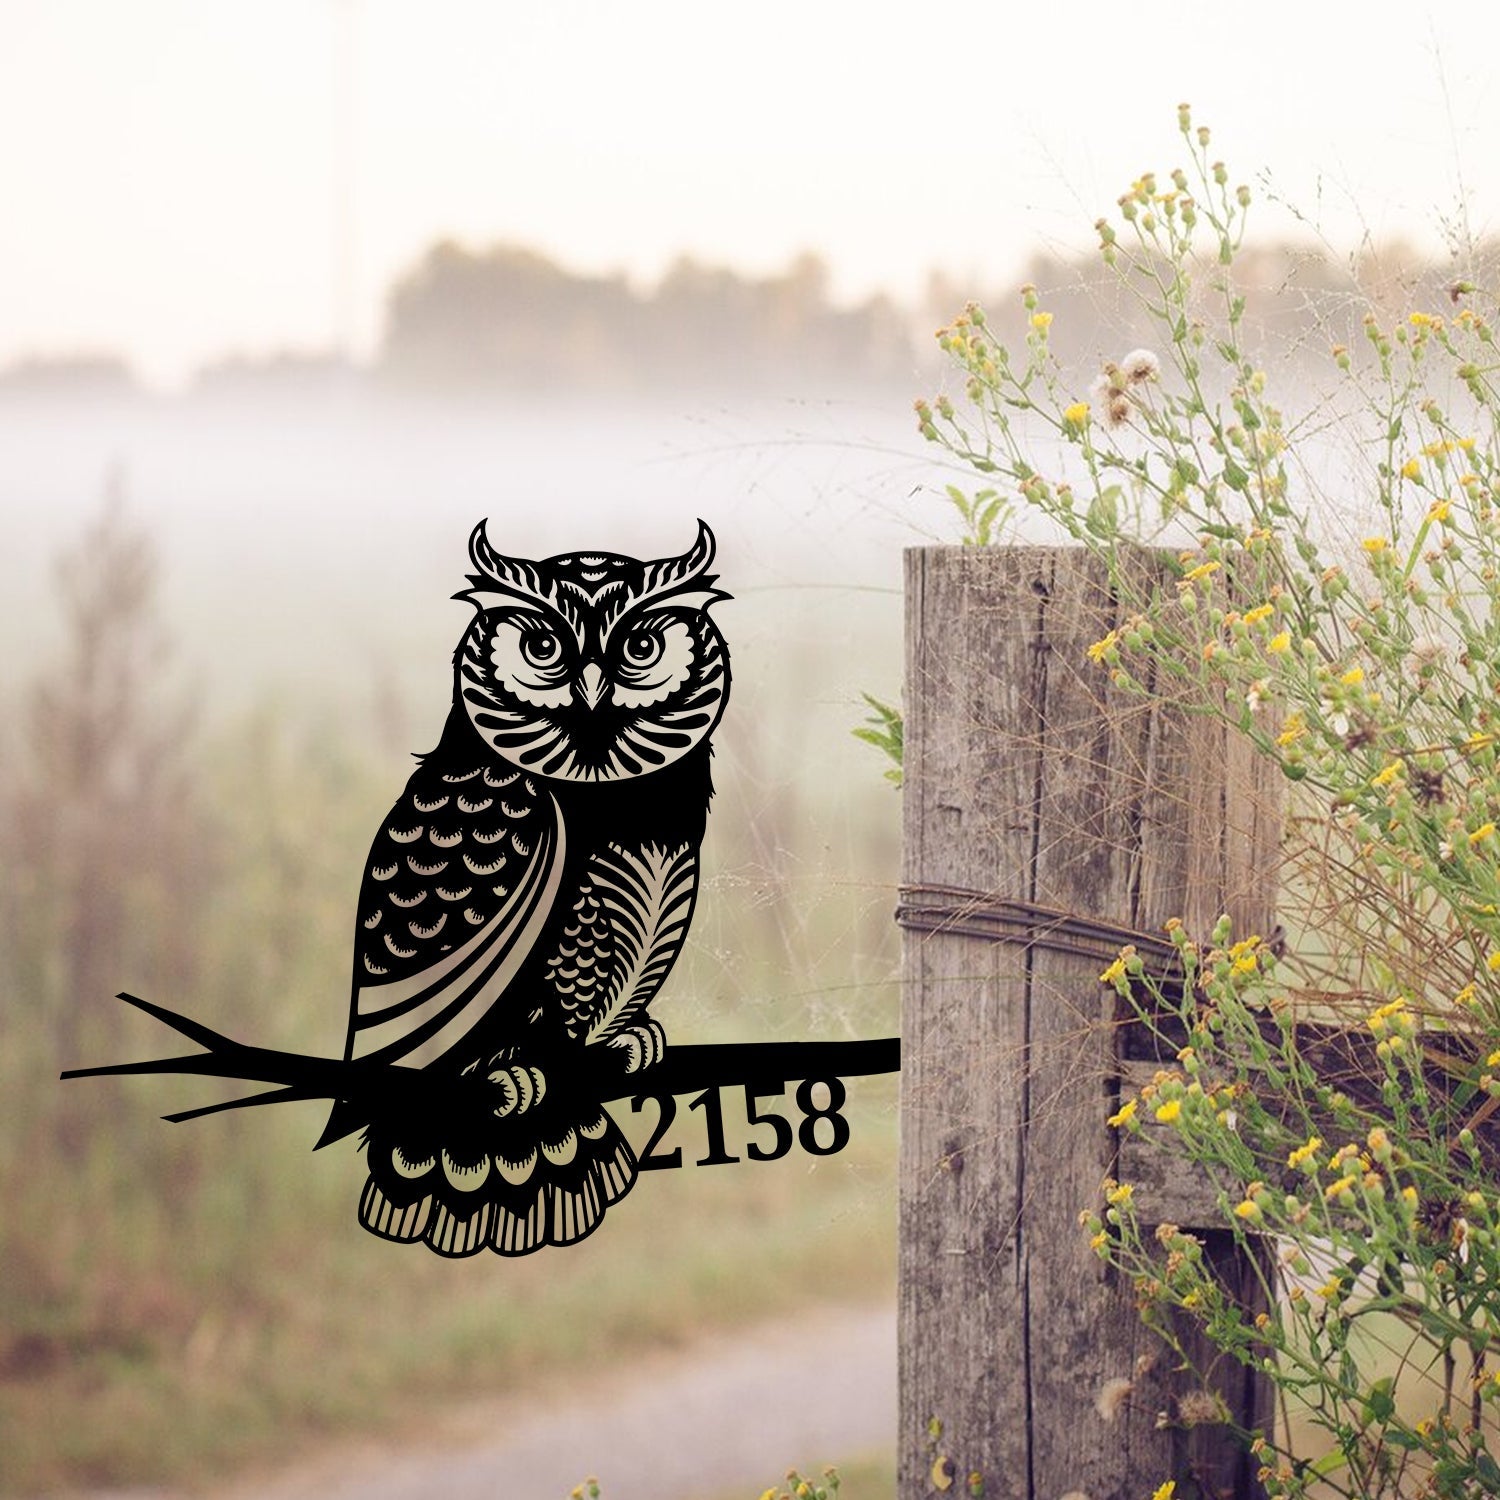 Personalized Address Owl Metal Tree Stake, Owl Bird Decor